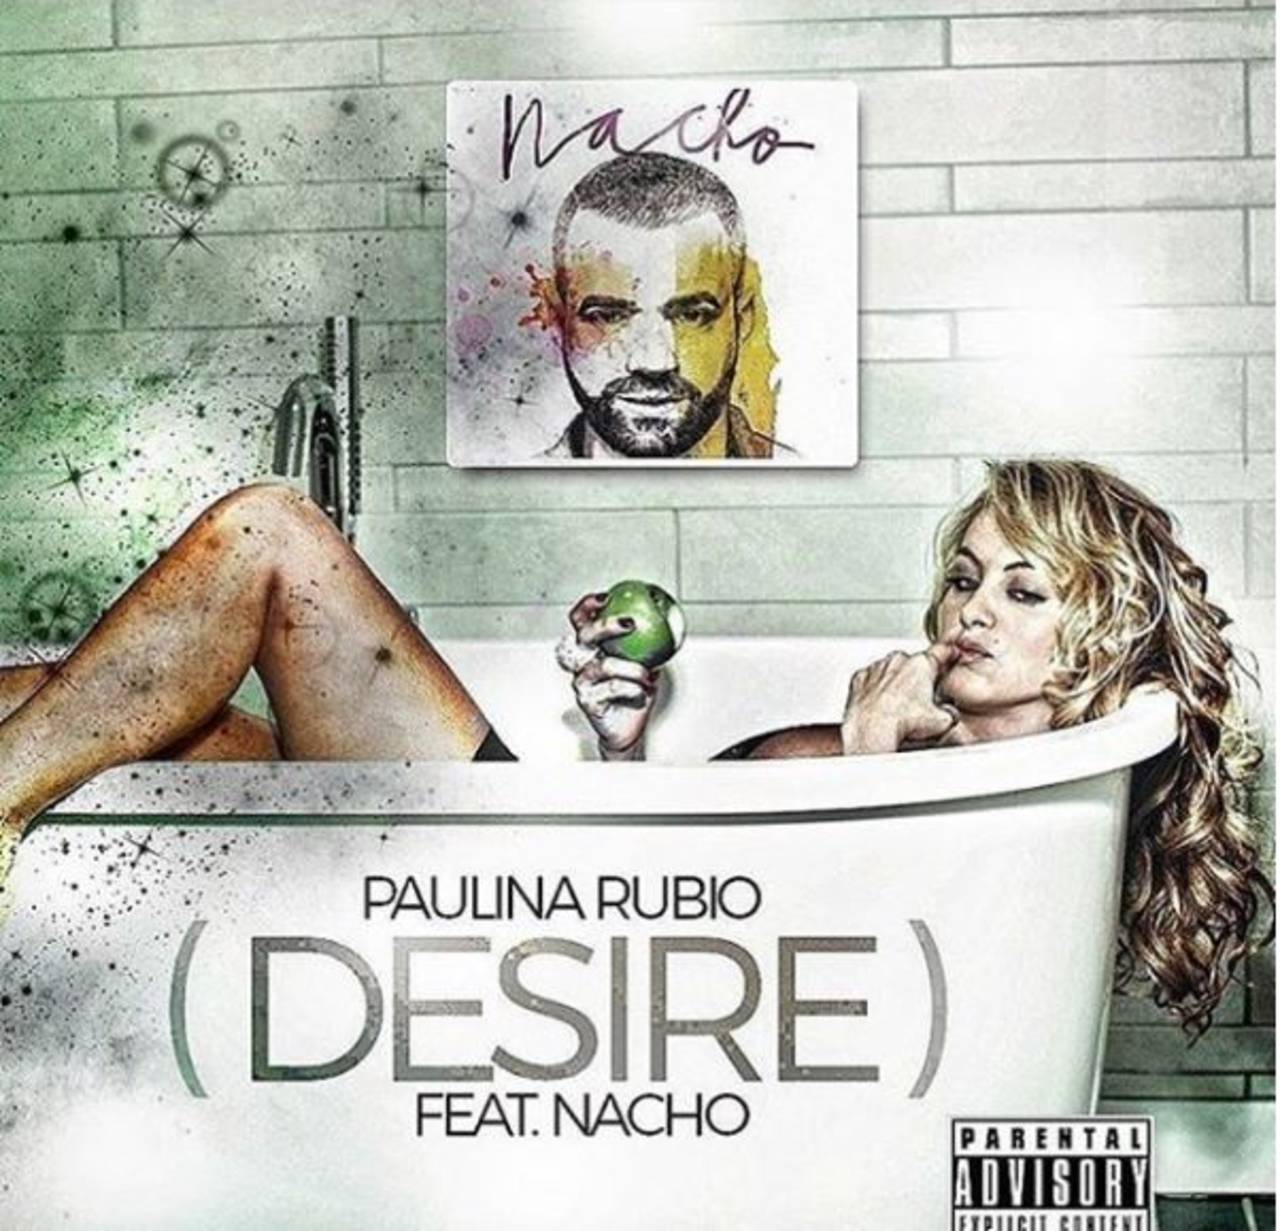 Dueto. Los cantantes Nacho y Paulina Rubio colaboraron juntos en el tema Desire; el cual pronto estará en el mercado. (ARCHIVO)